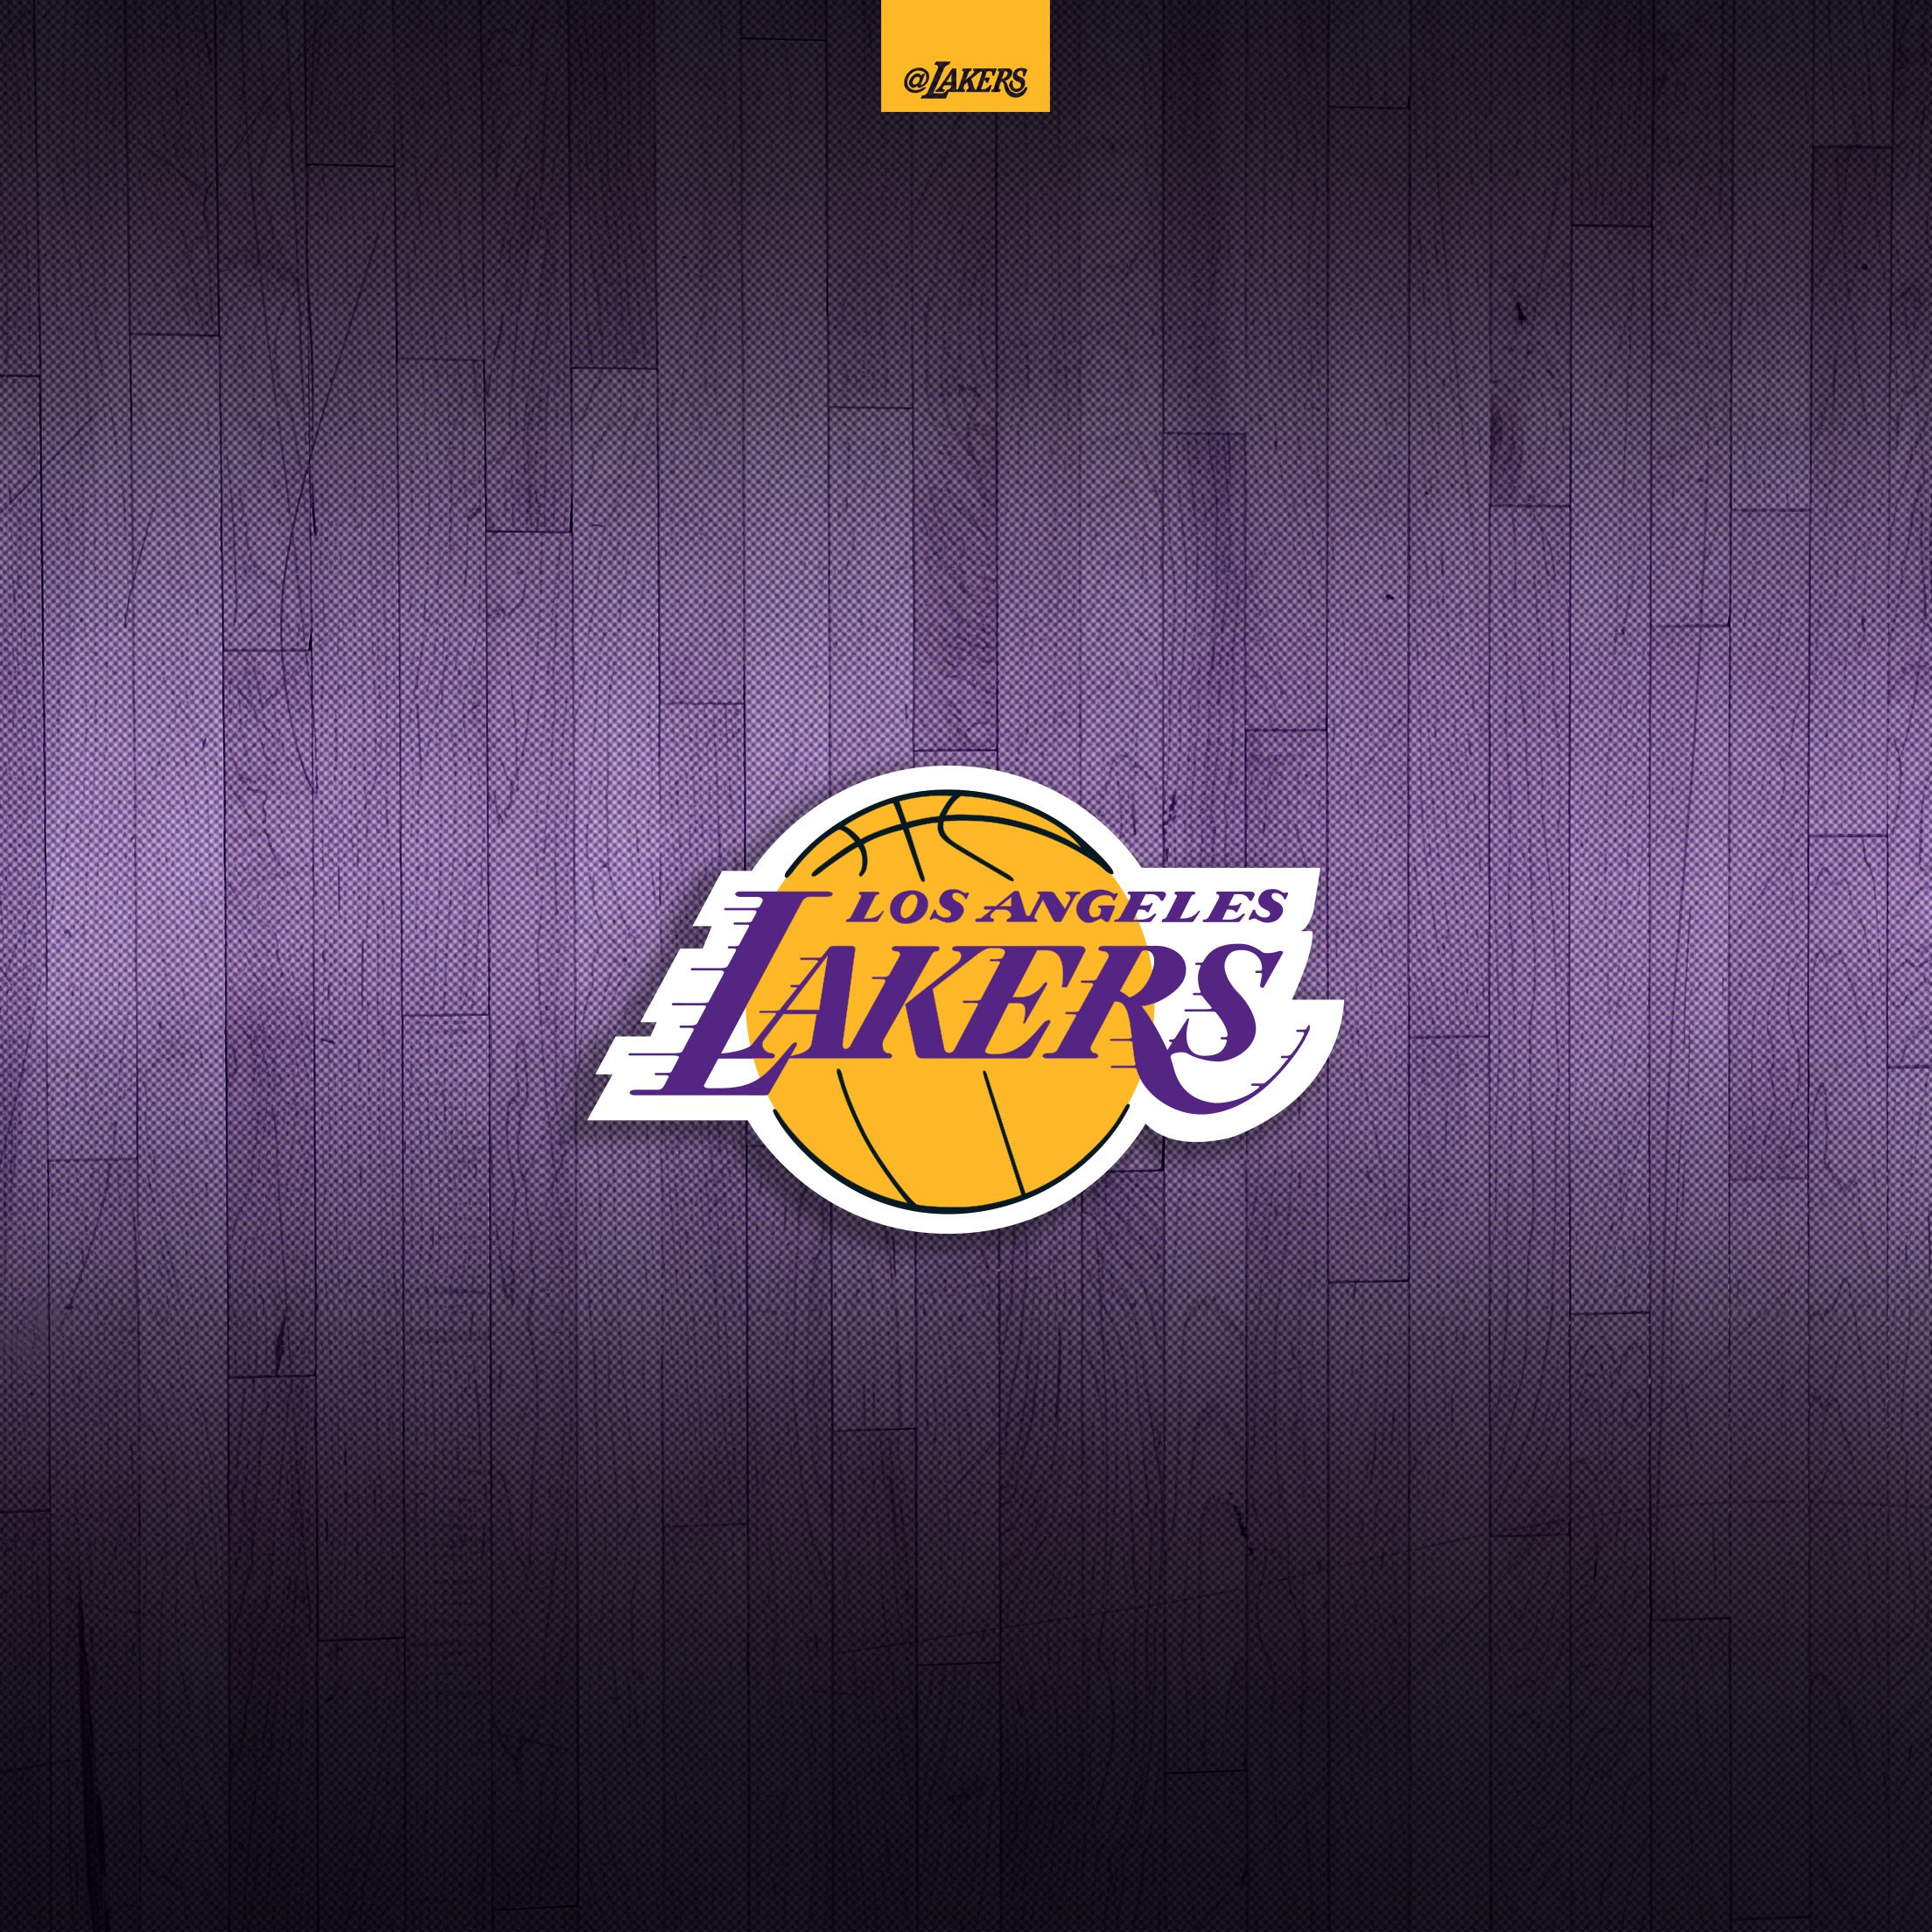 Los Angeles Lakers Big 4 2560×1440 Wallpaper  Basketball Wallpapers at